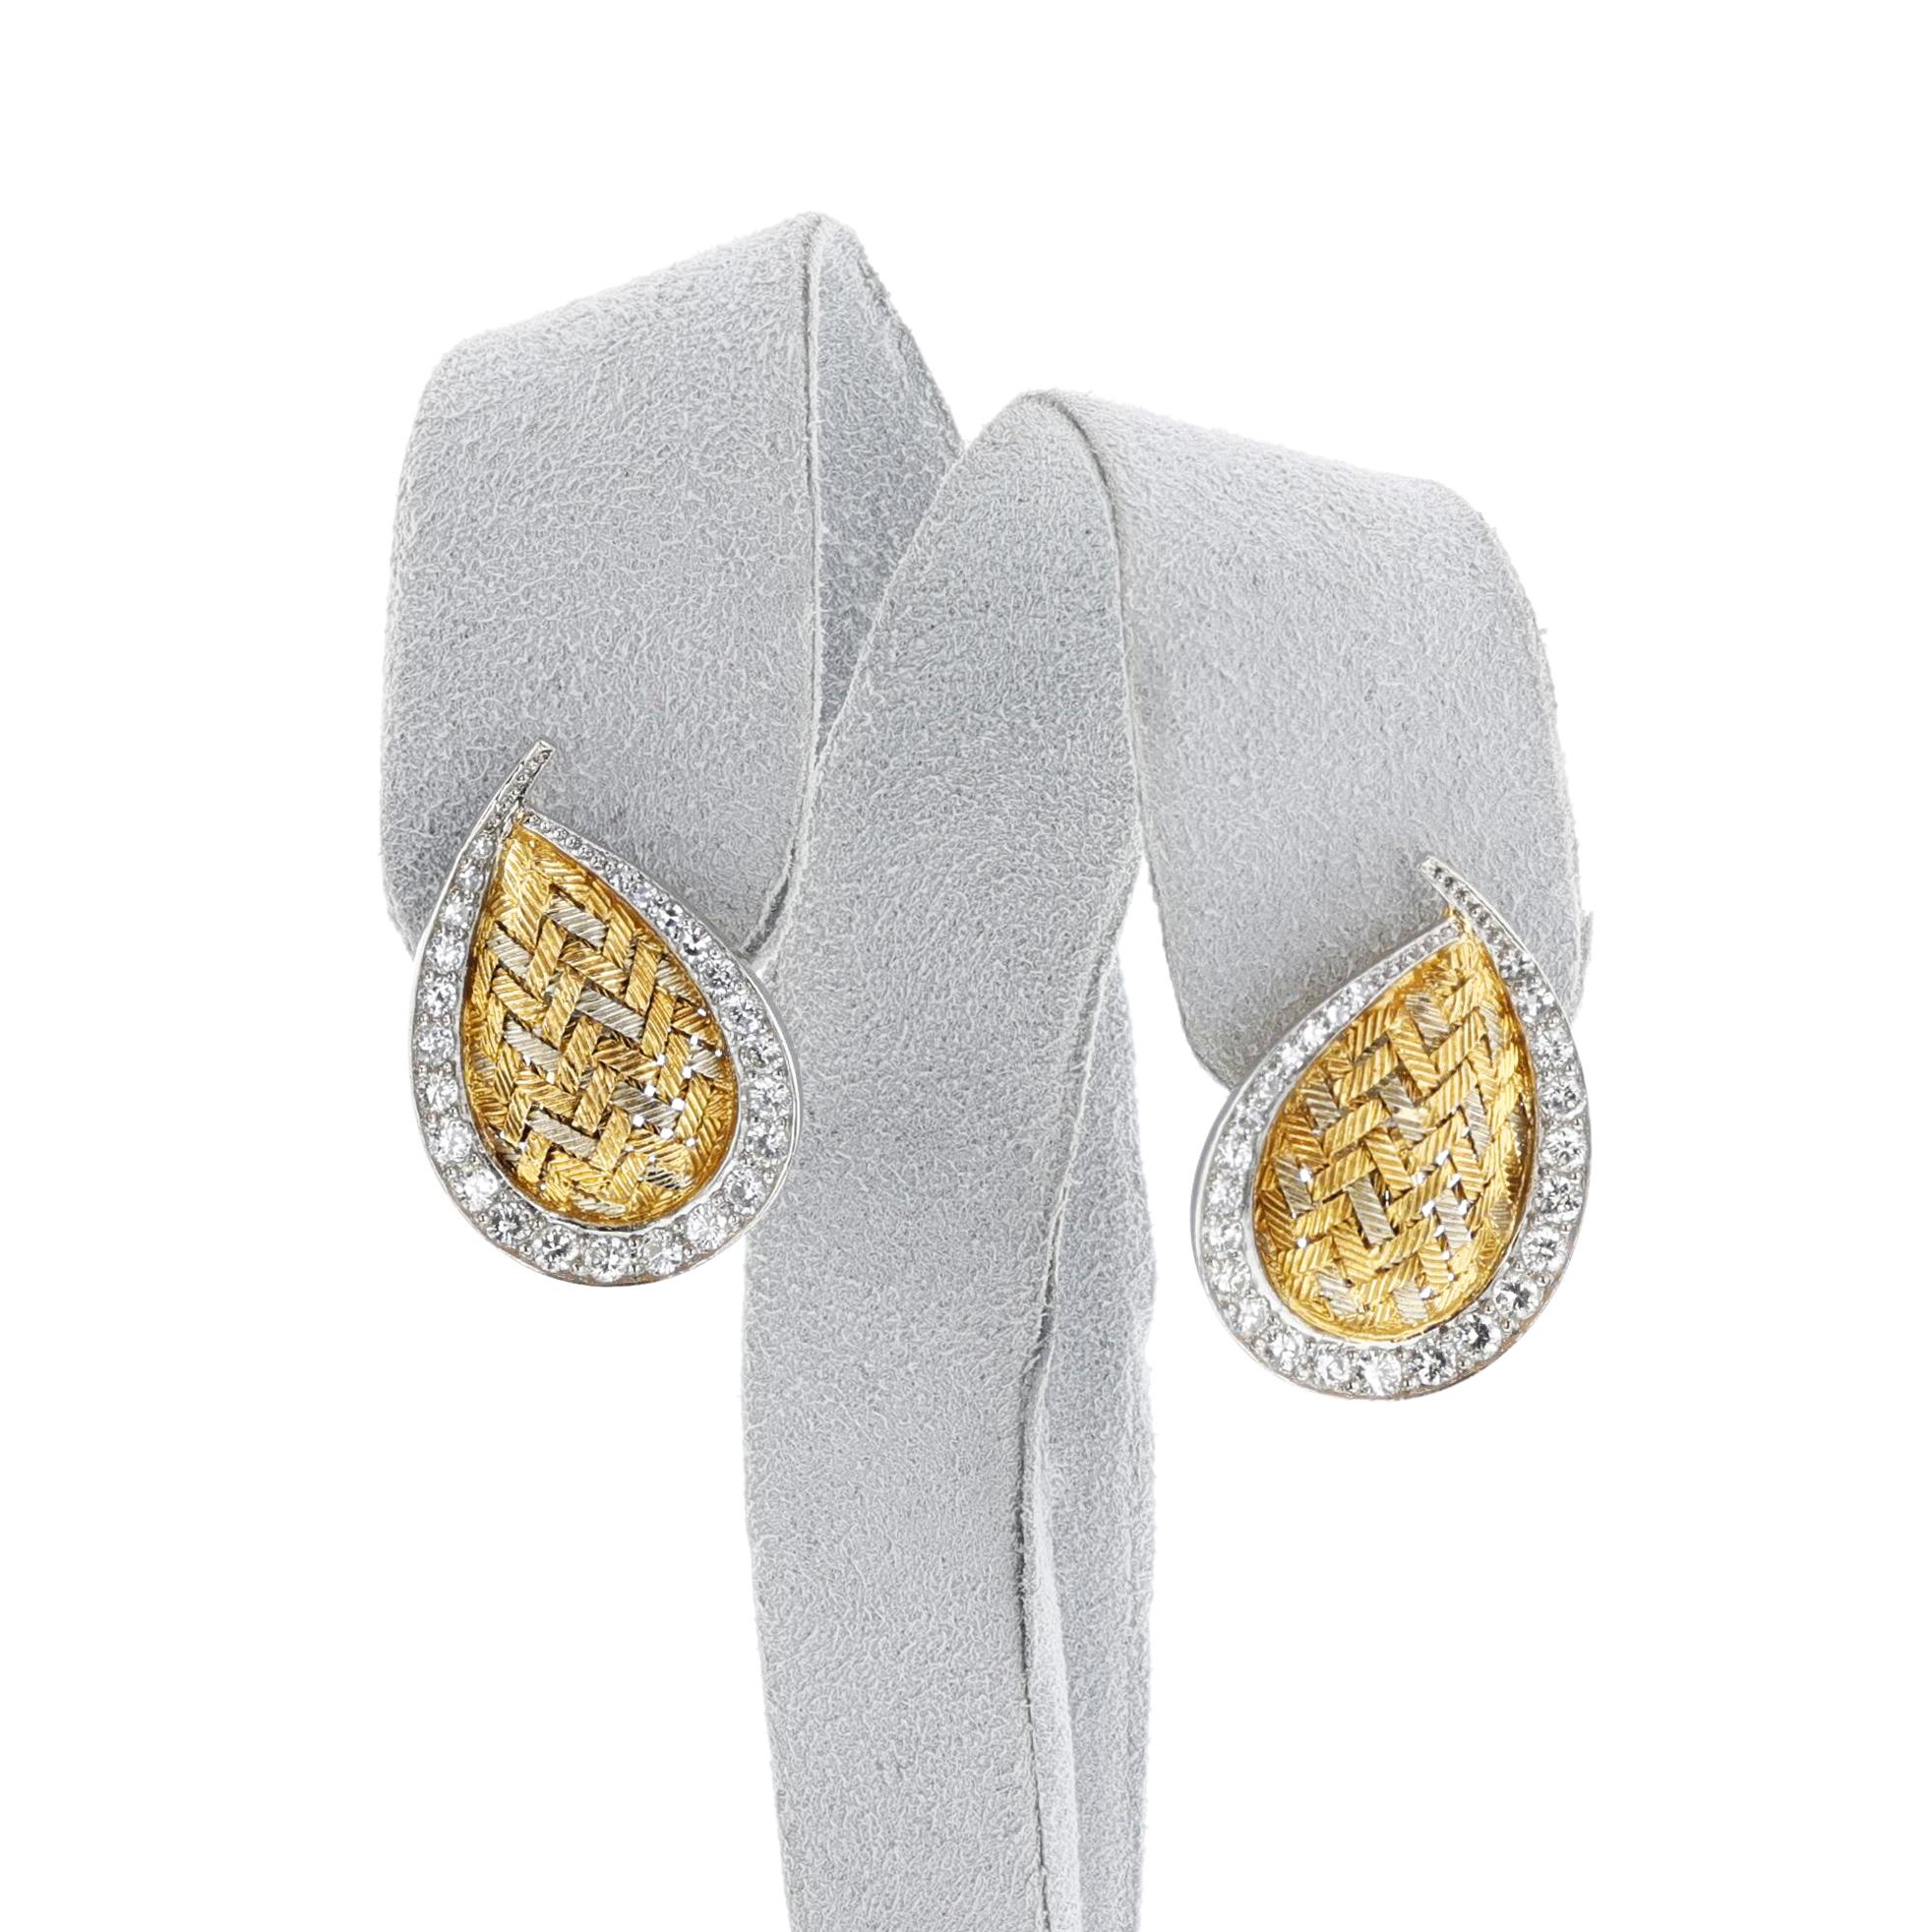 Merrin France Diamant und Texted Gold Birne Form Blatt Ohrringe aus 18k Gold. Das Gesamtgewicht beträgt 13,3 Gramm. Die Länge beträgt 1 Zoll.

SKU: 1482-AFEJPRT